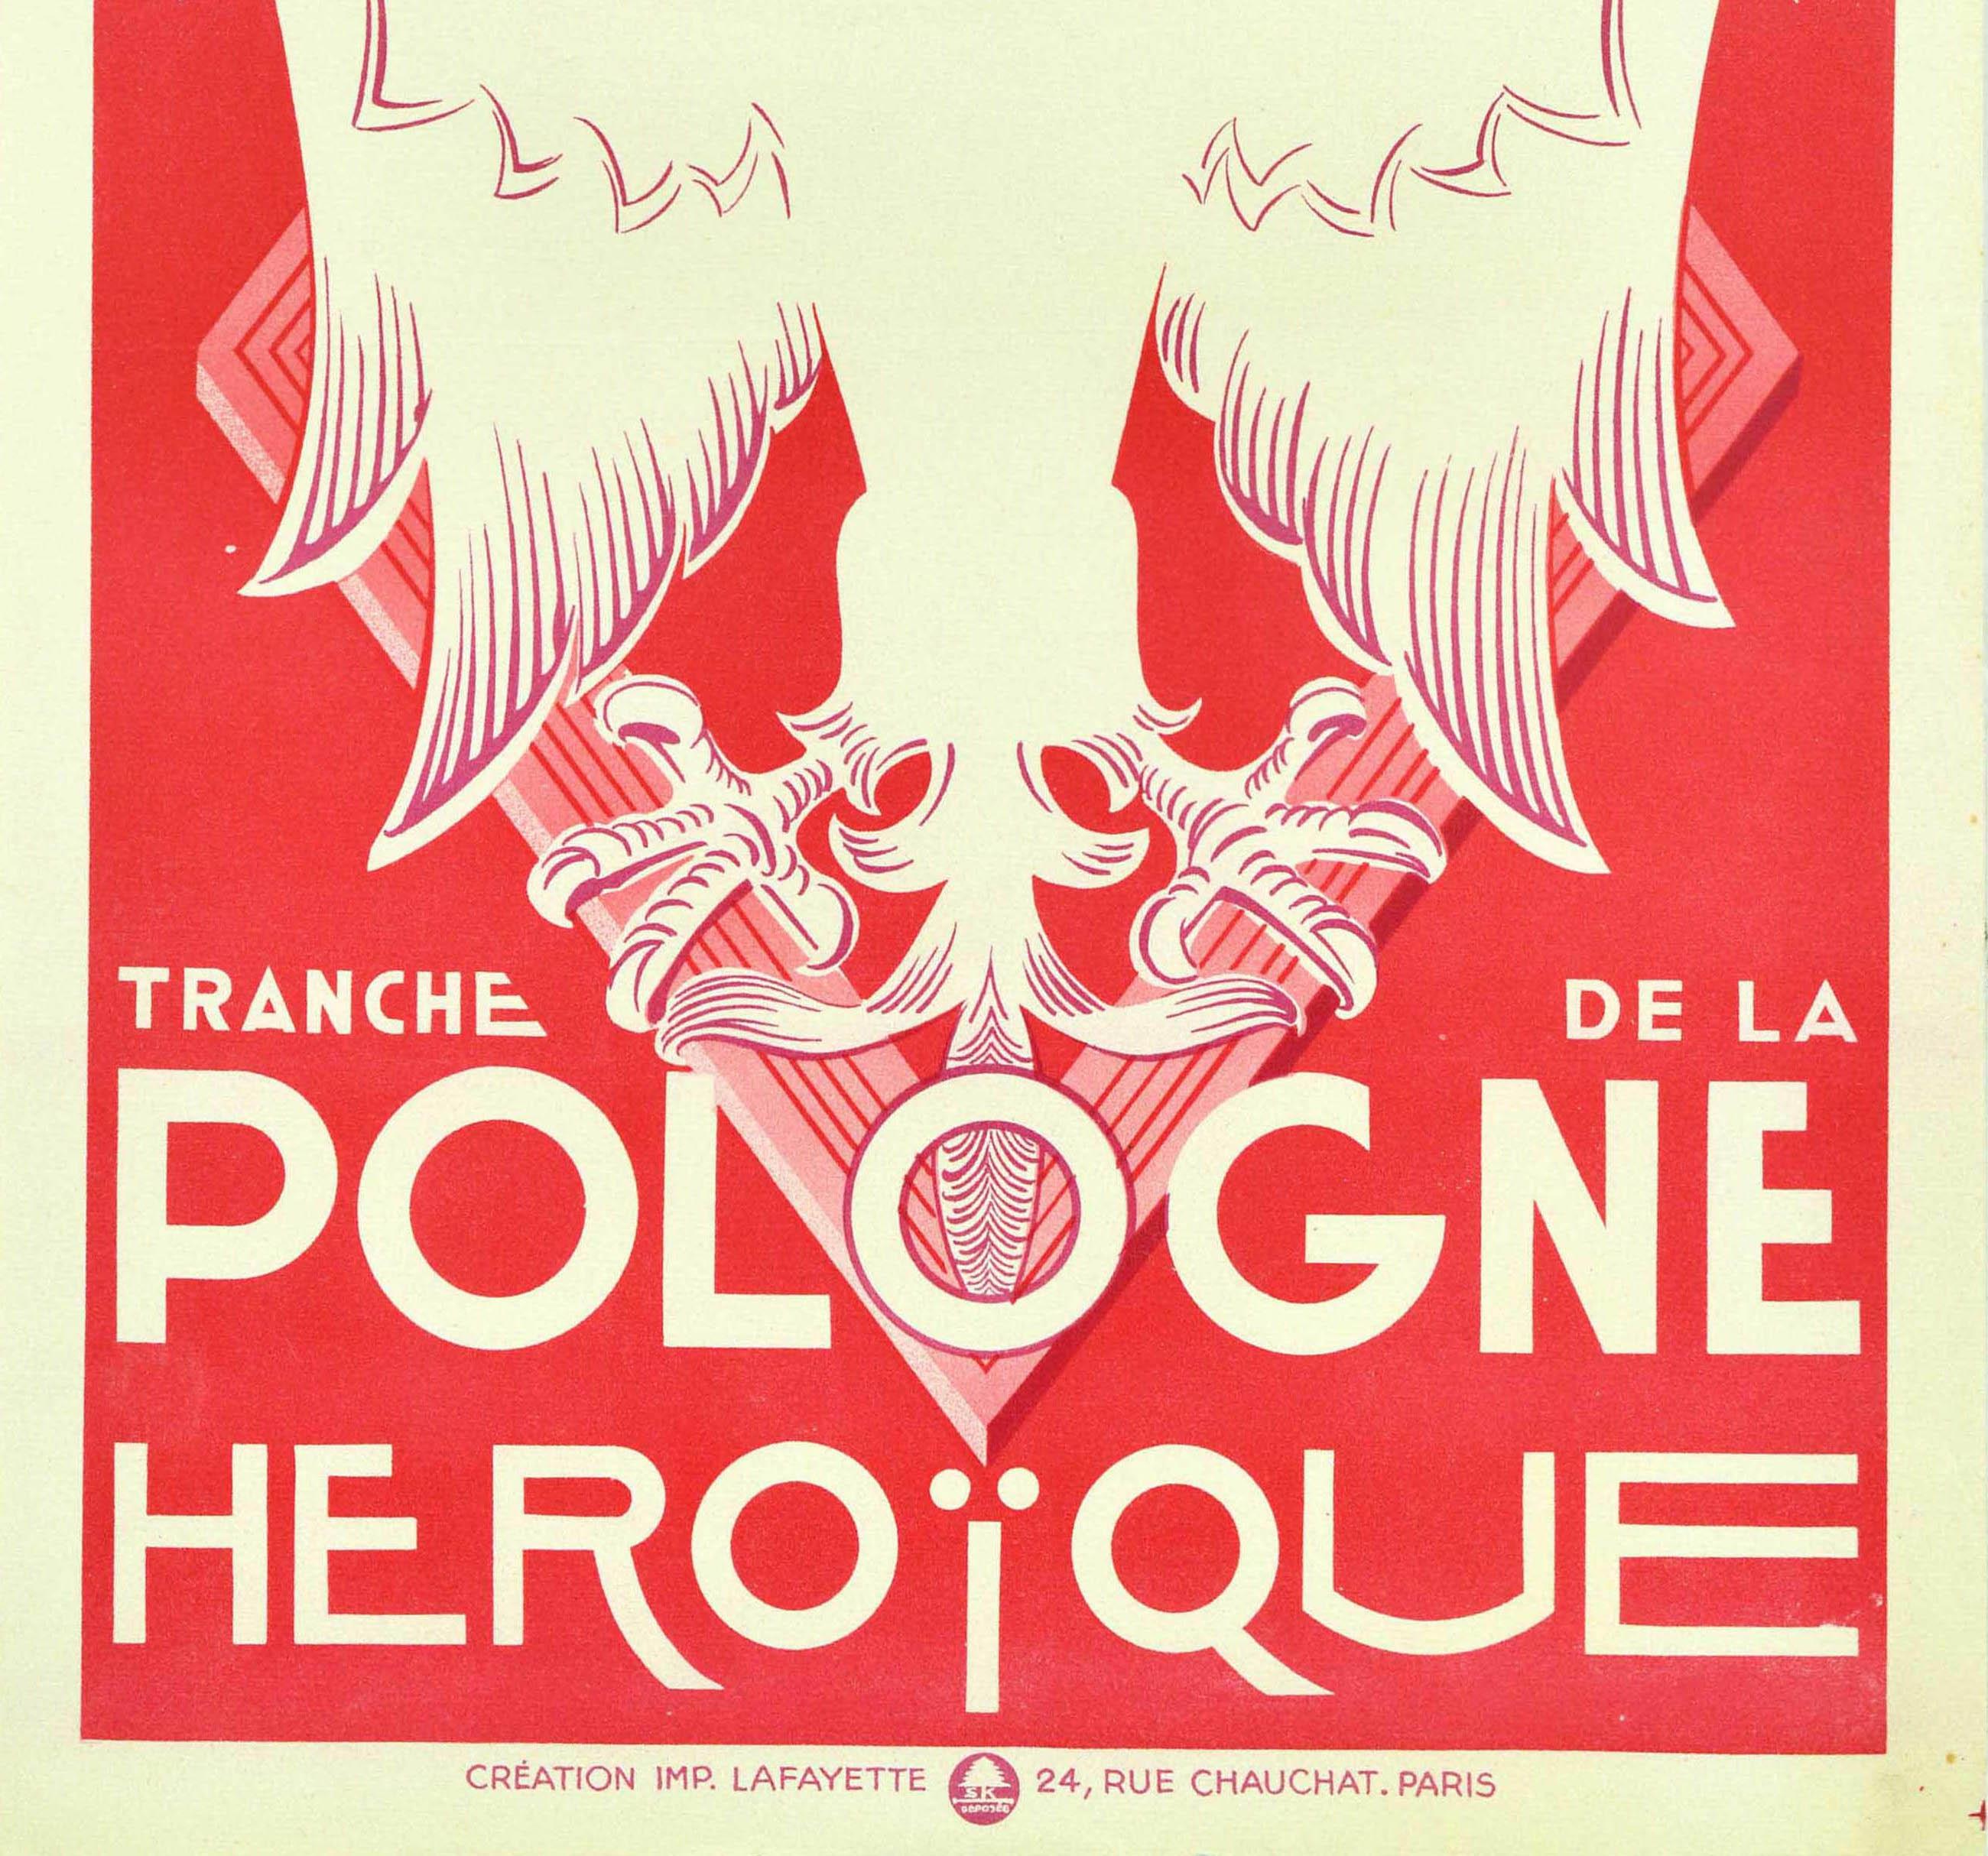 Originales Werbeplakat für die Loterie Nationale 3e Tranche 1940 Tranche de la Pologne Heroique / Nationale Lotterie Heldenhaftes Polen mit einer Illustration eines gekrönten weißen Adlers über einer Raute auf rotem Hintergrund, der Titel auf einer